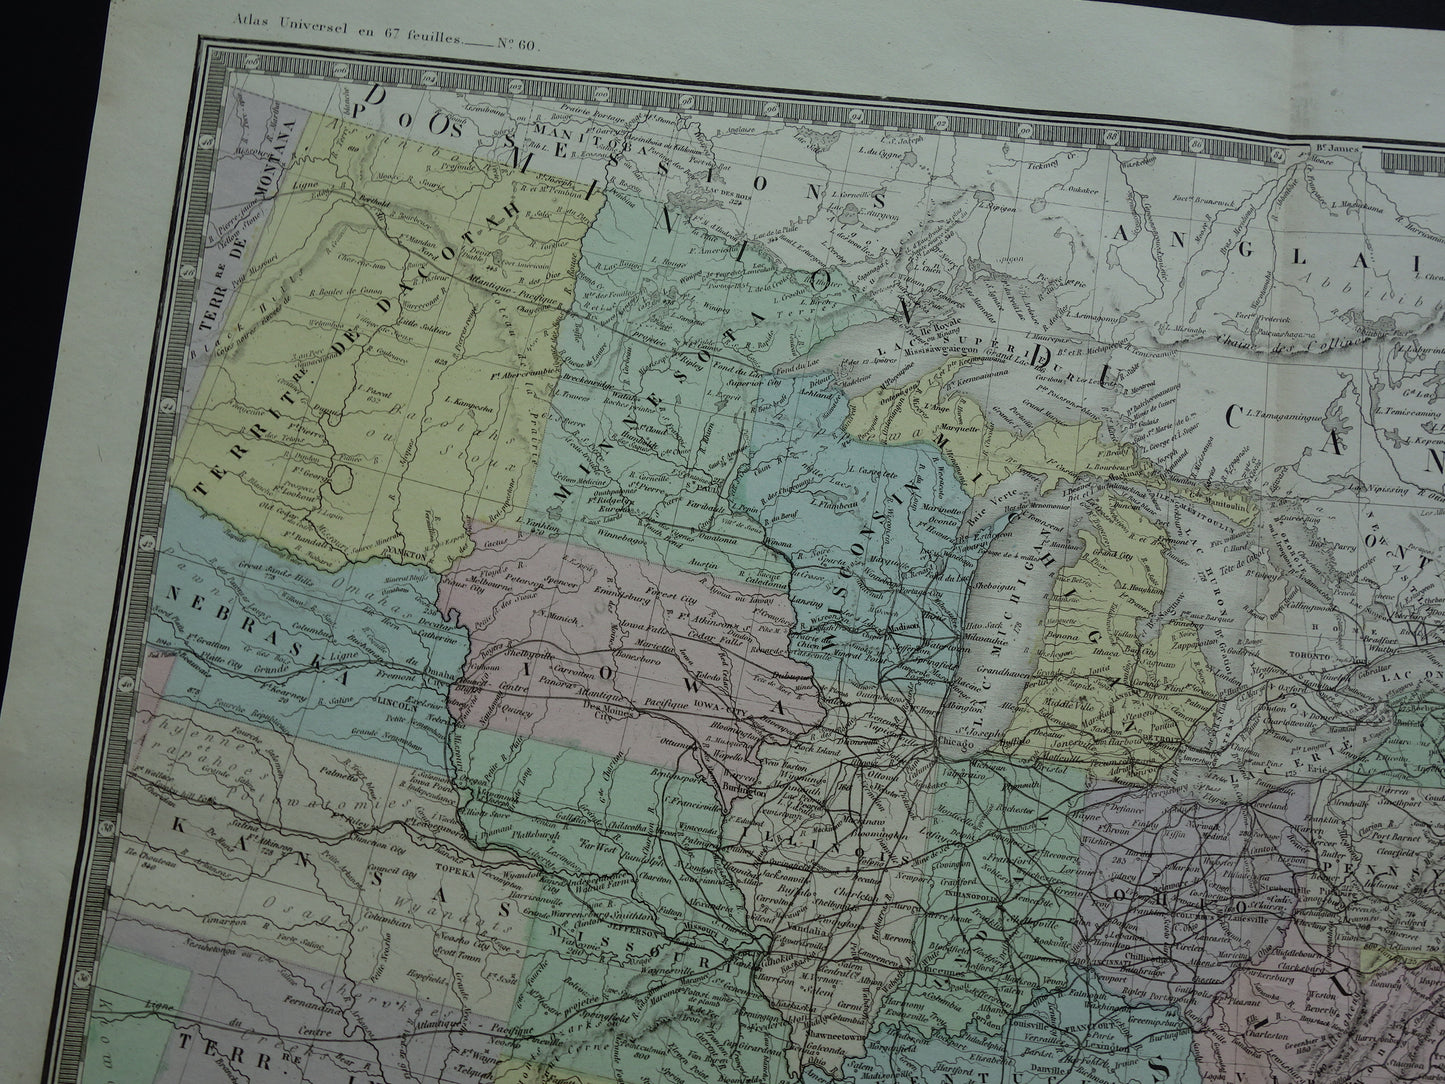 VERENIGDE STATEN antieke kaart van de VS 140+ jaar oude landkaart van Oostkust Amerika USA originele vintage historische kaarten